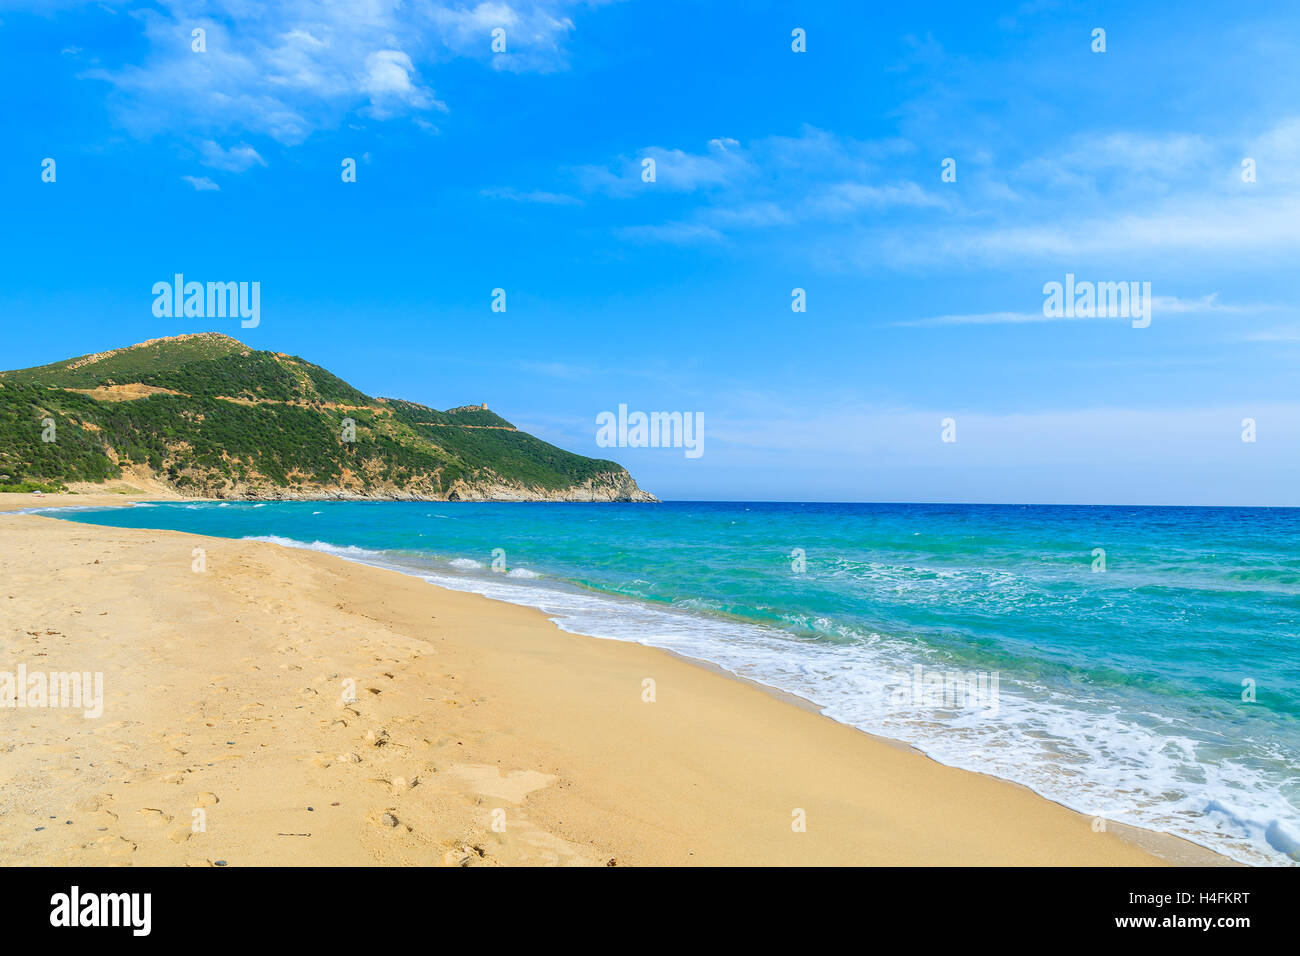 Beautiful Capo Boi beach and blue sea, Sardinia island, Italy Stock Photo